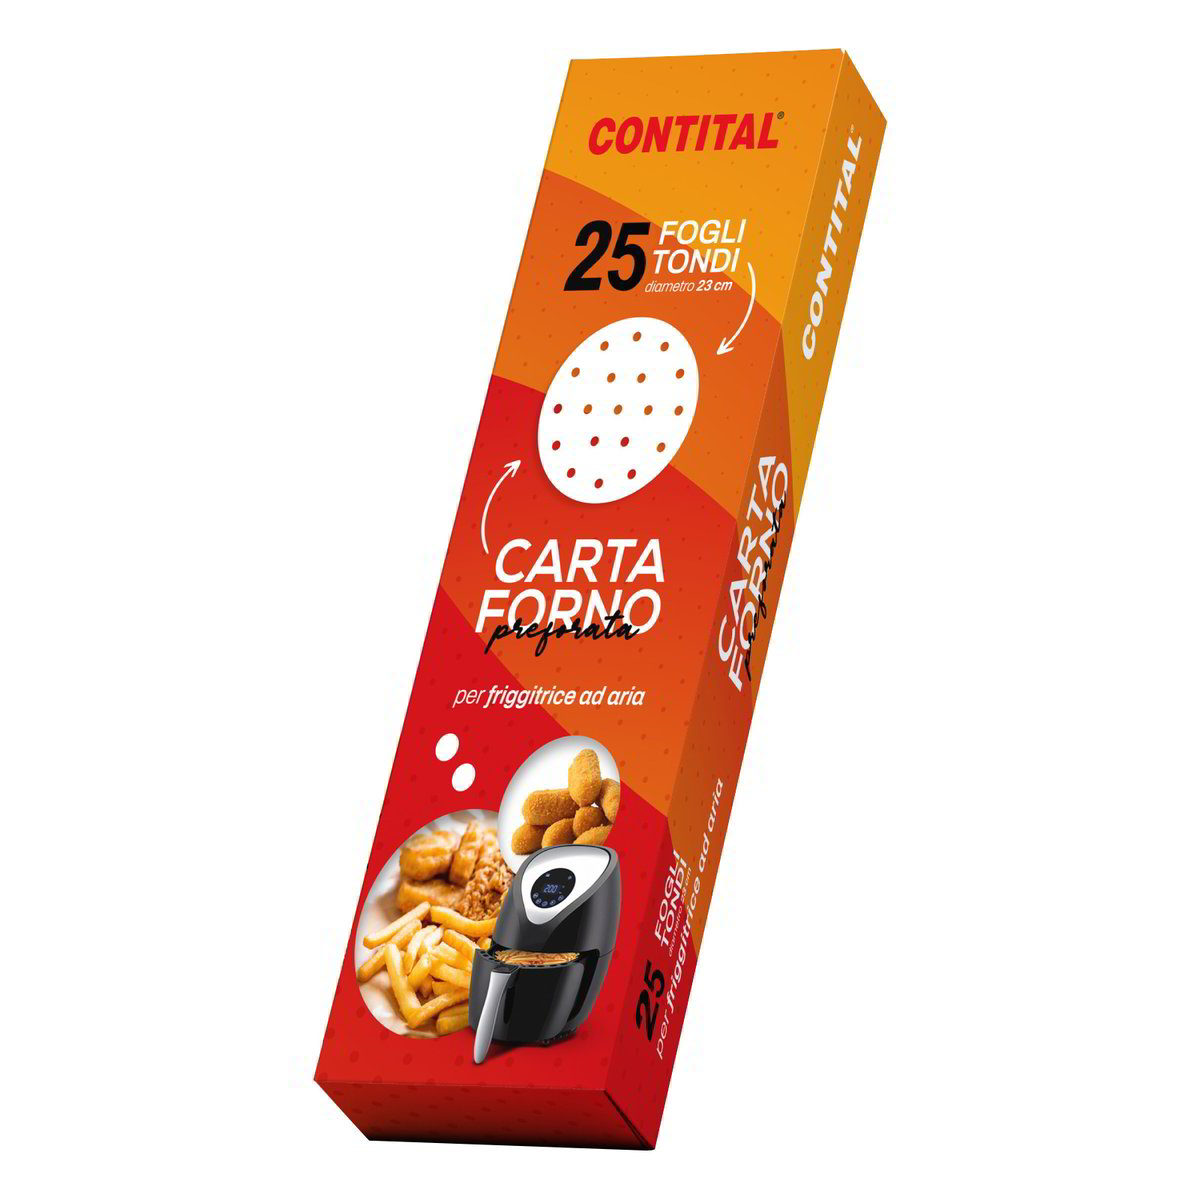 CARTA FORNO FRIGGITR.ARIA CONTITAL PZ.25 - Tigros